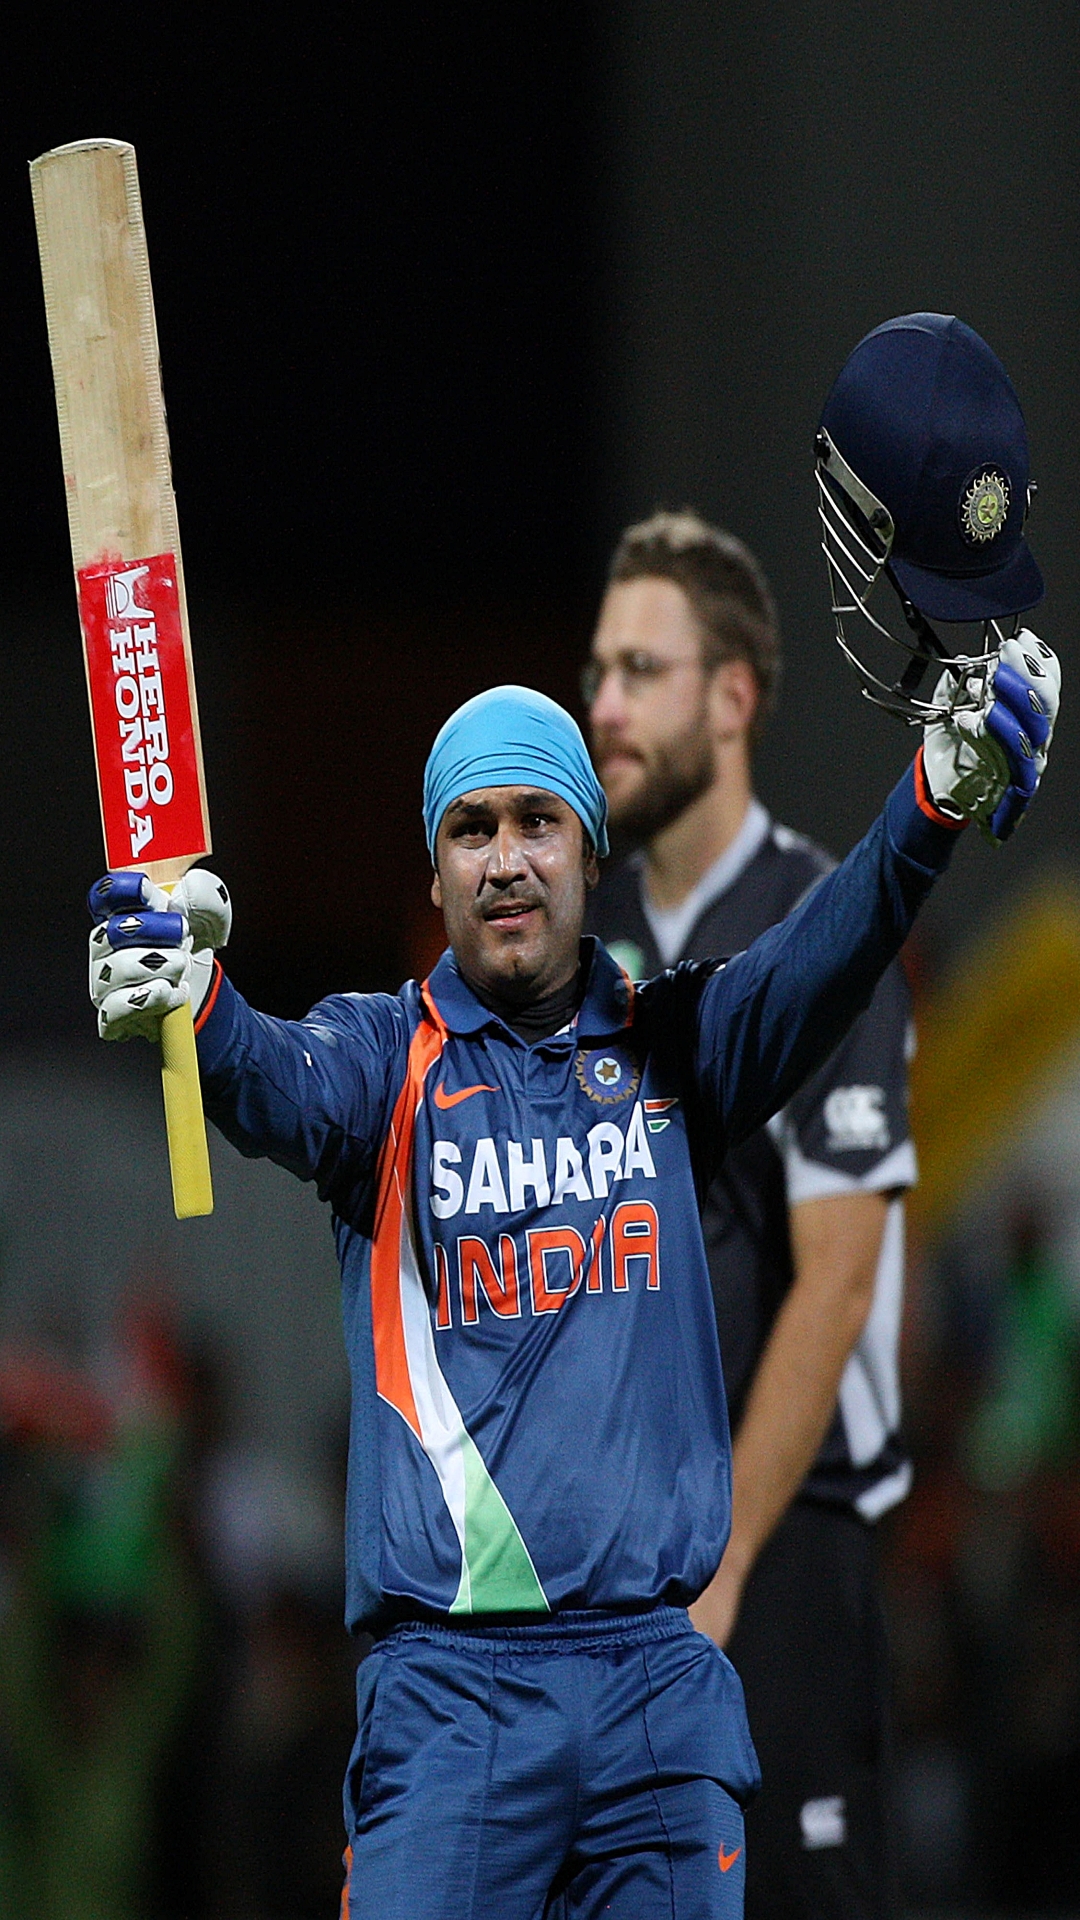 ODI क्रिकेट के पहले ओवर में सबसे ज्यादा छक्के जड़ने वाले धाकड़ बल्लेबाज, लिस्ट में 2 भारतीय शामिल